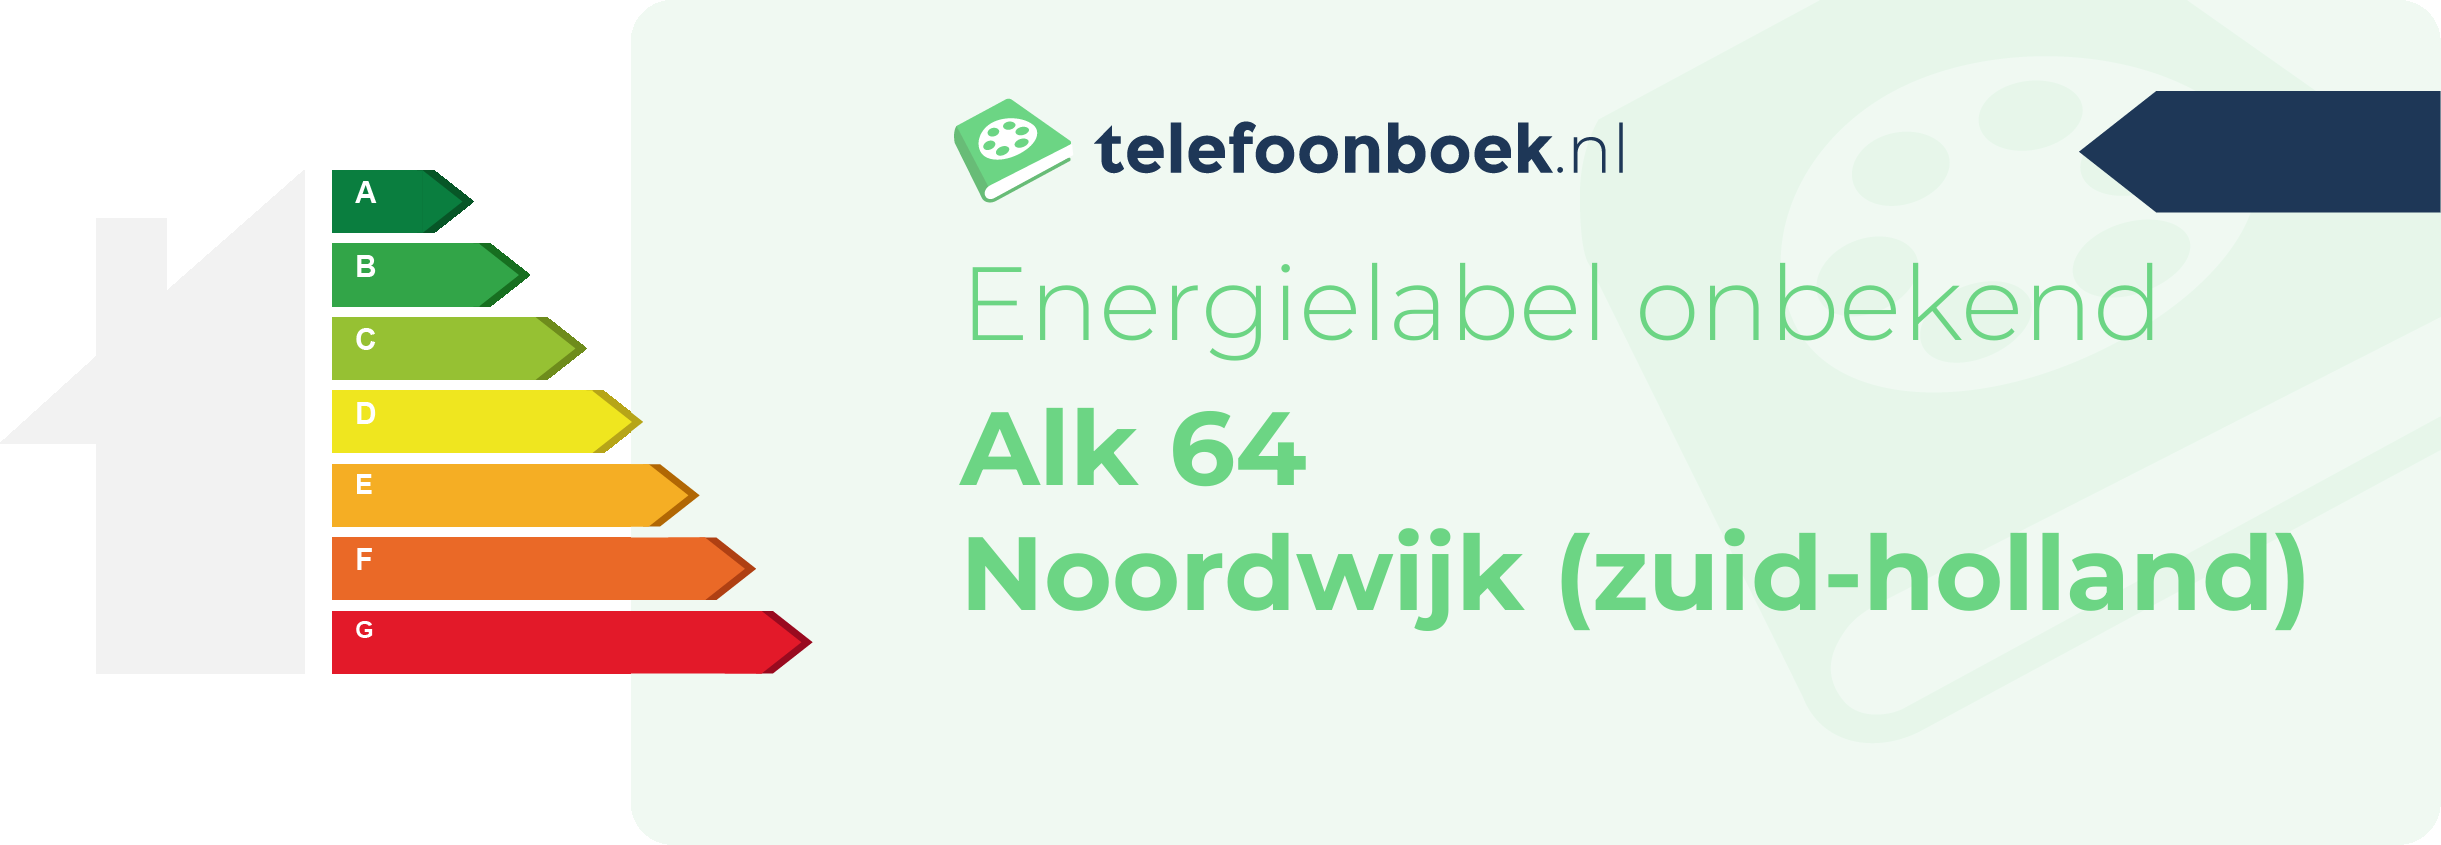 Energielabel Alk 64 Noordwijk (Zuid-Holland)